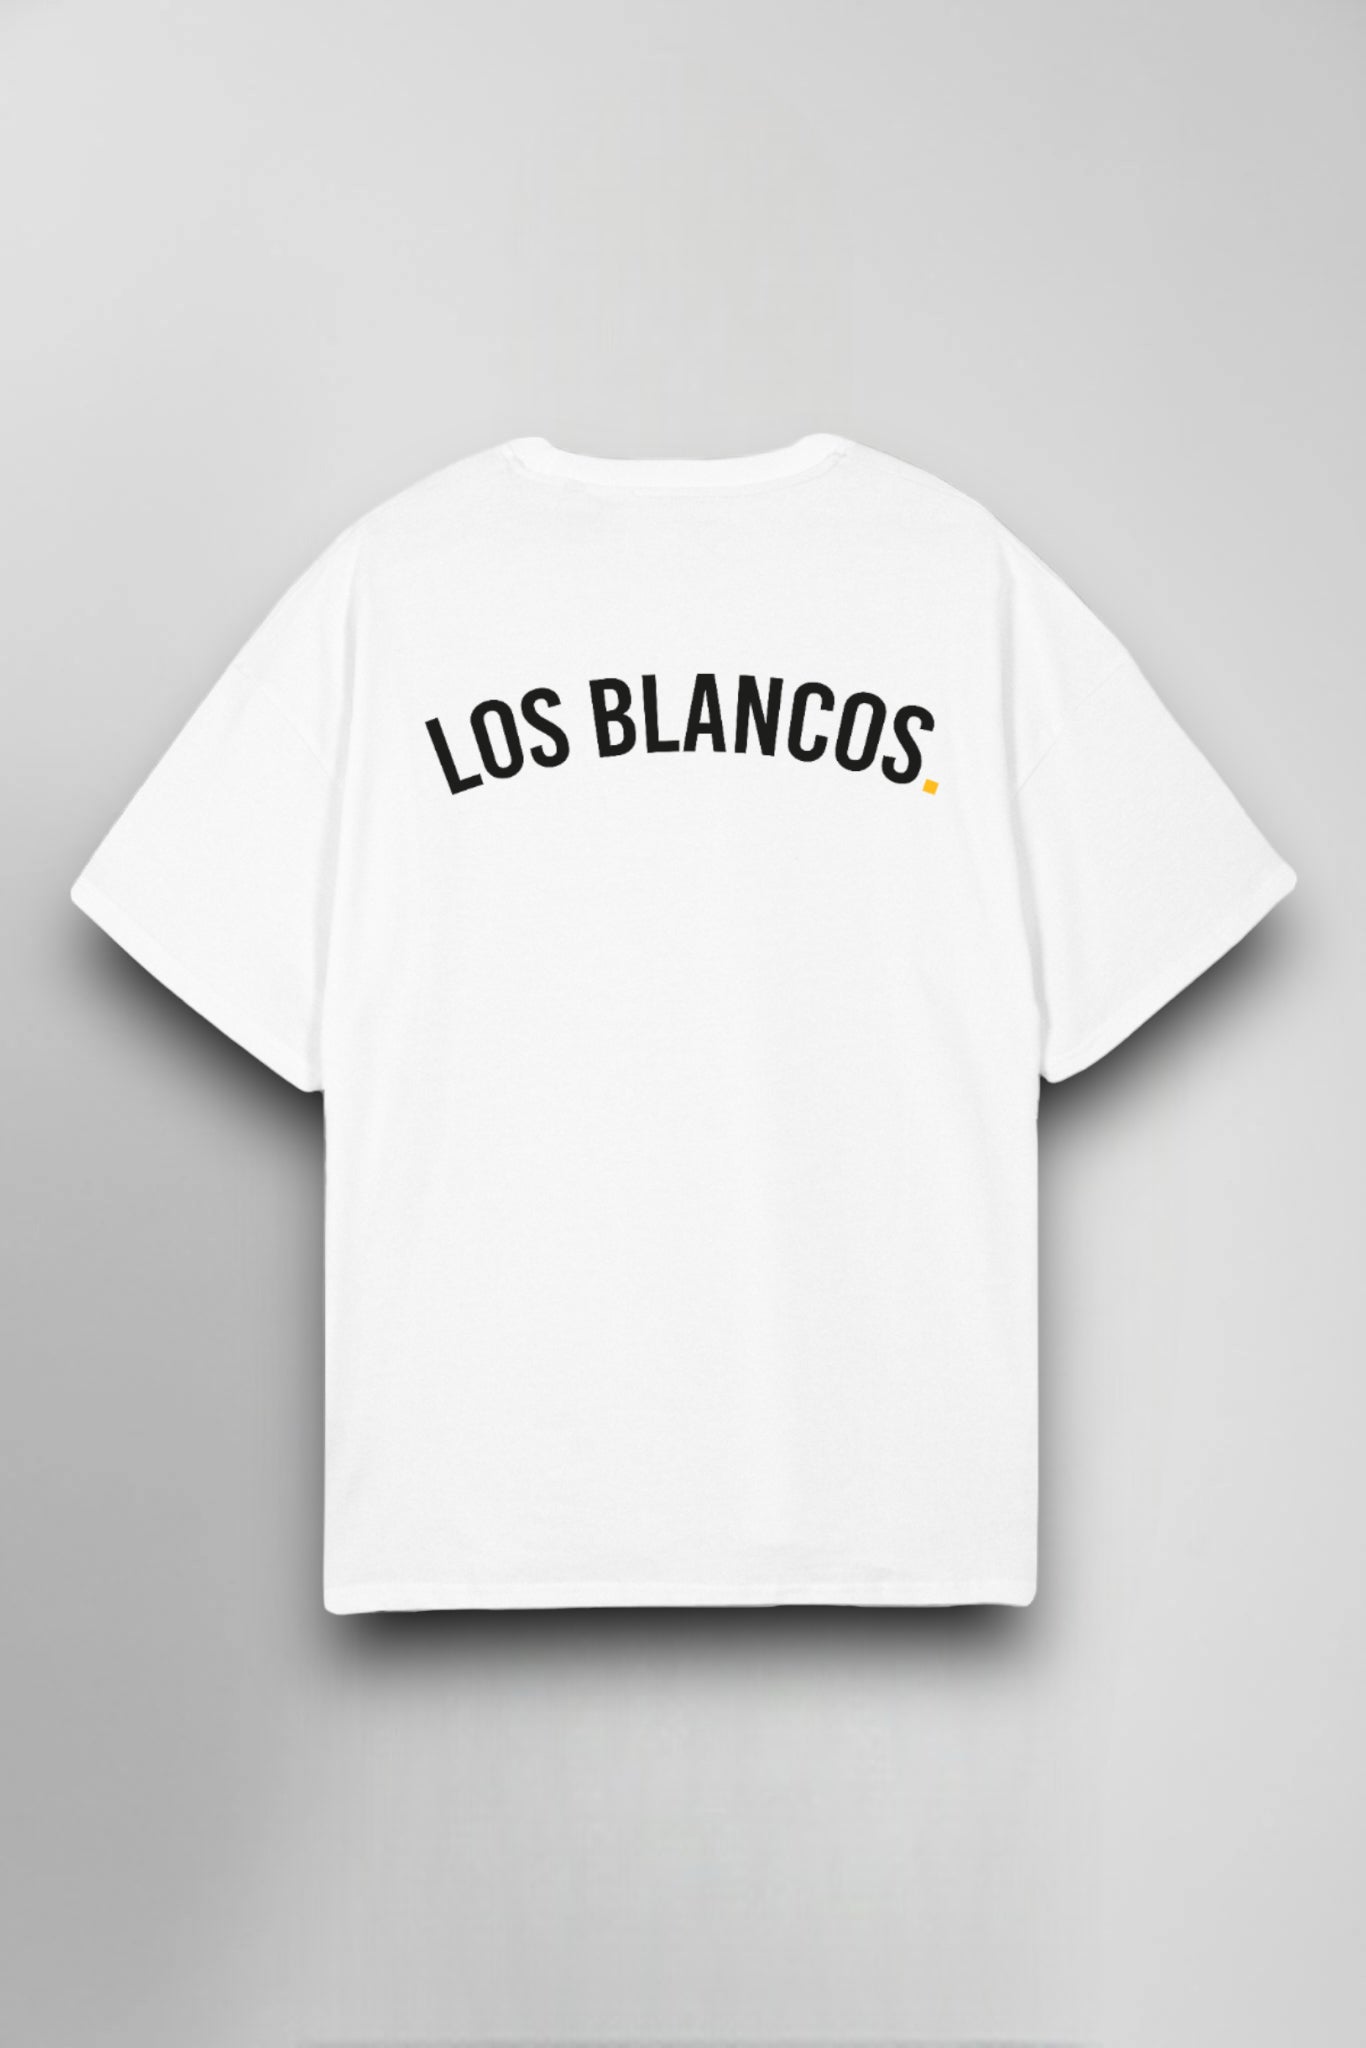 LOS BLANCOS T-Shirt #1 White